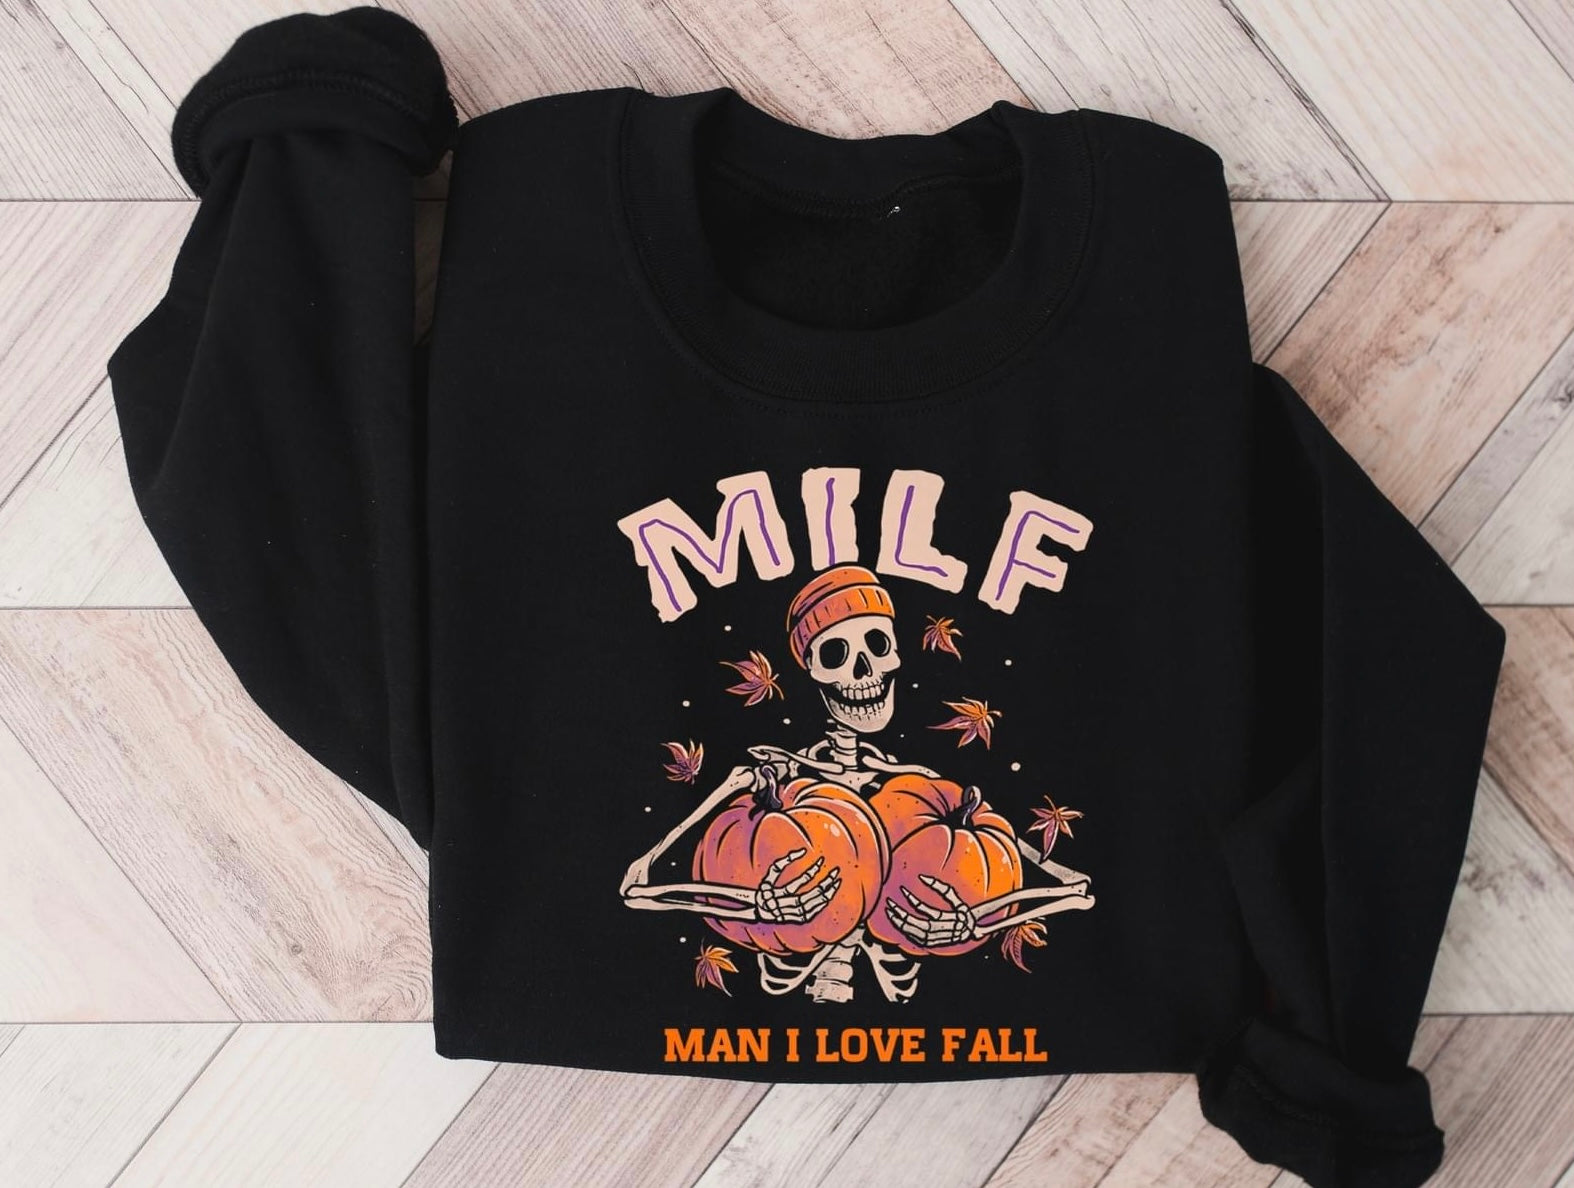 Man I Love Fall Tee or Sweatshirt